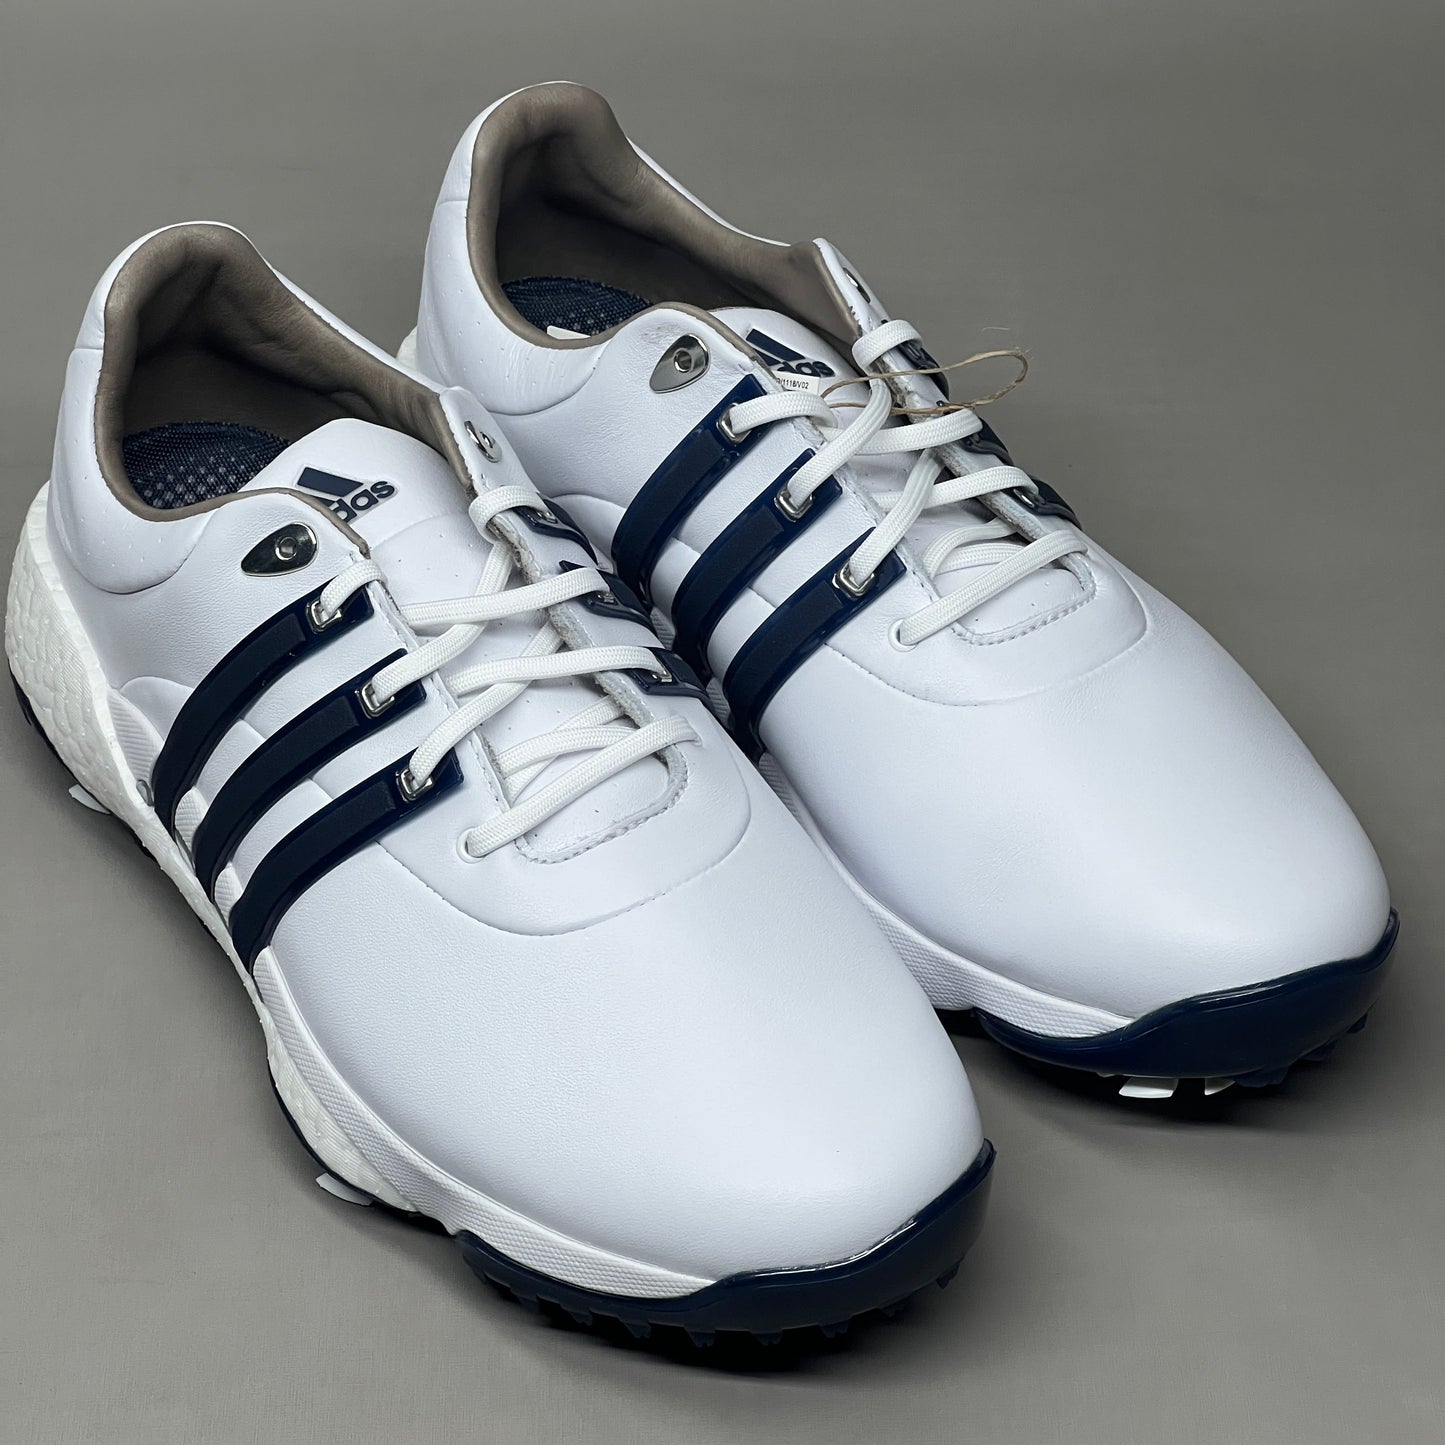 ADIDAS Golf Shoes TOUR360 22 Leather Men's Sz 12 White / Navy / Silver GV7247 (New)